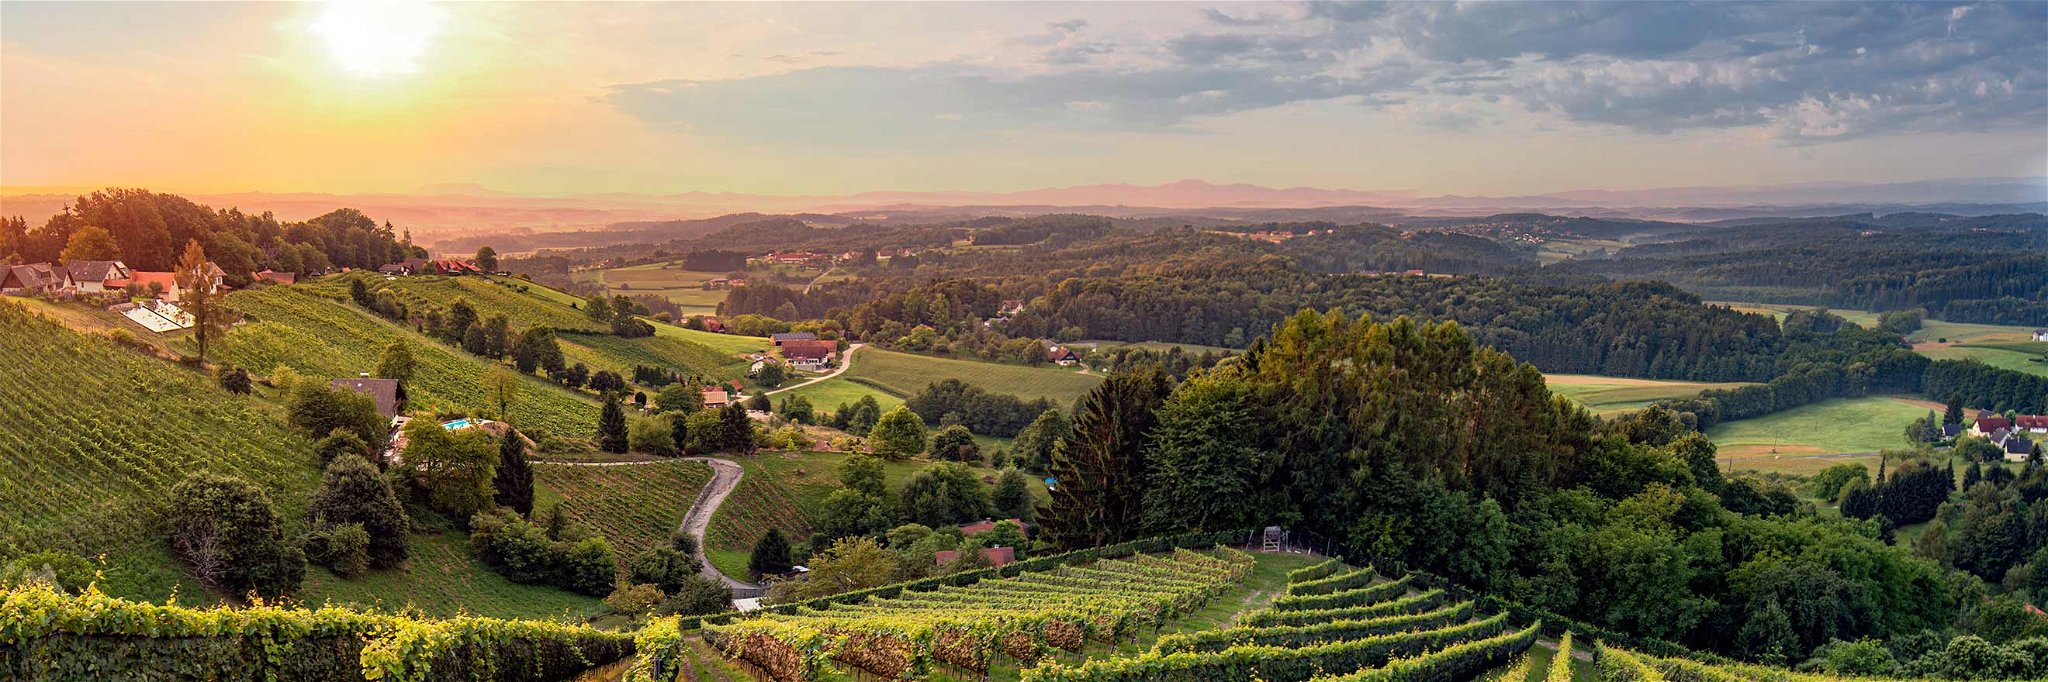 Weingärten bei Kothvogel, Weststeiermark, Steiermark